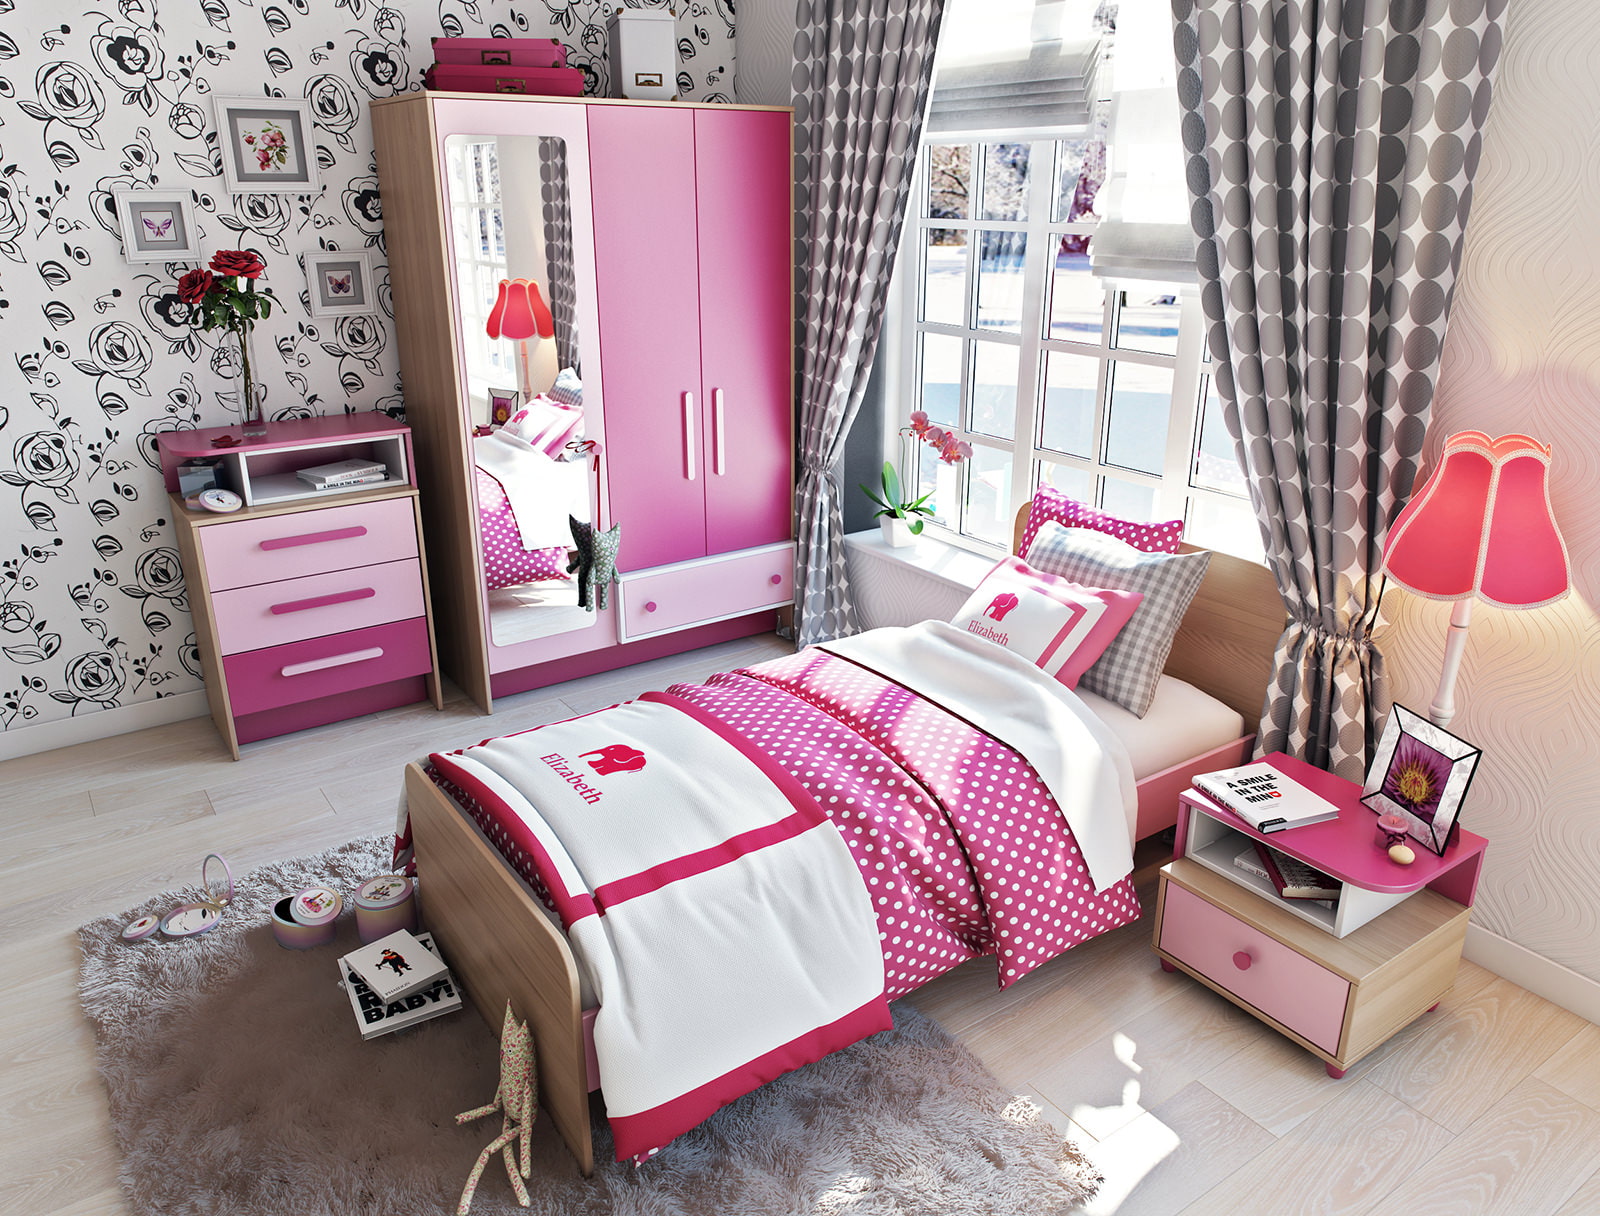 Pokój dziecięcy w kolorze różowym